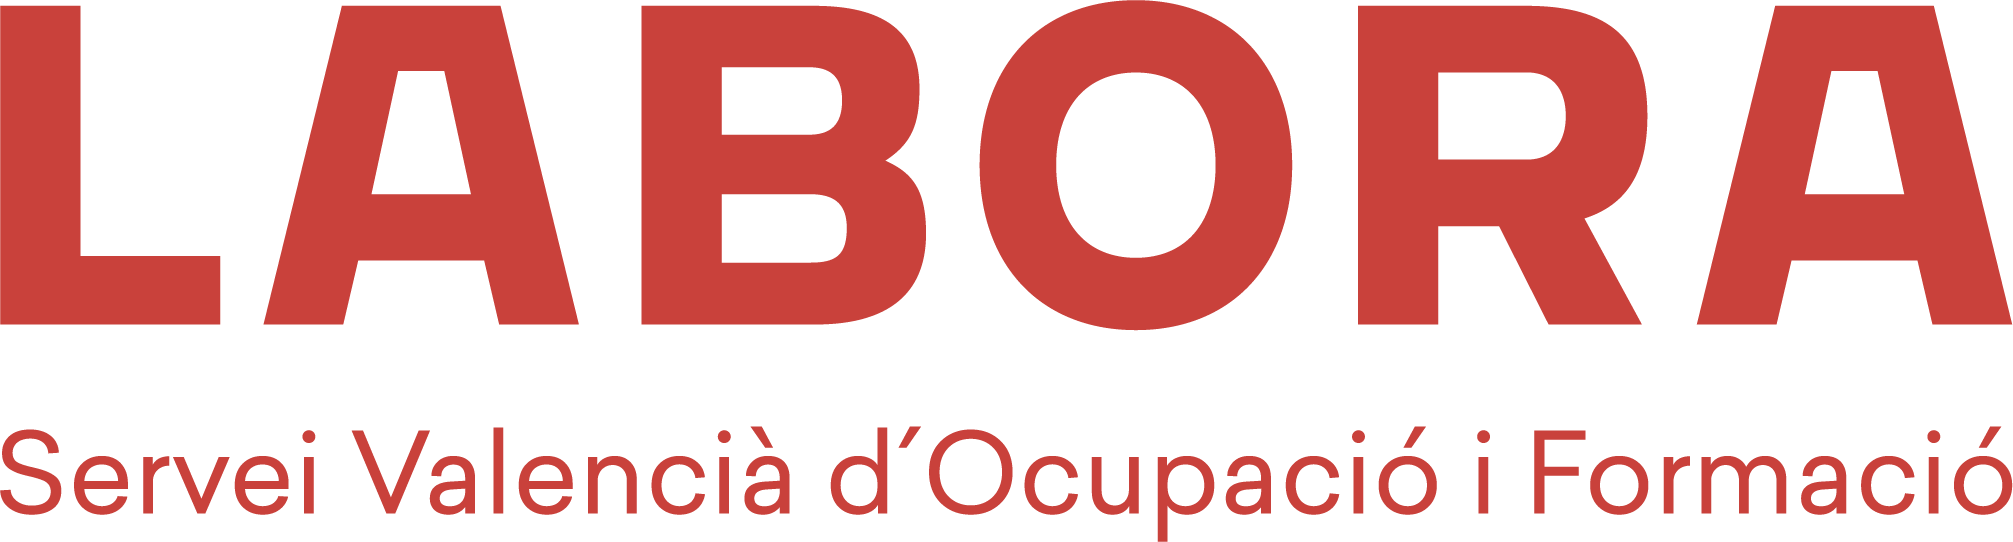 El Blog de LABORA Logo